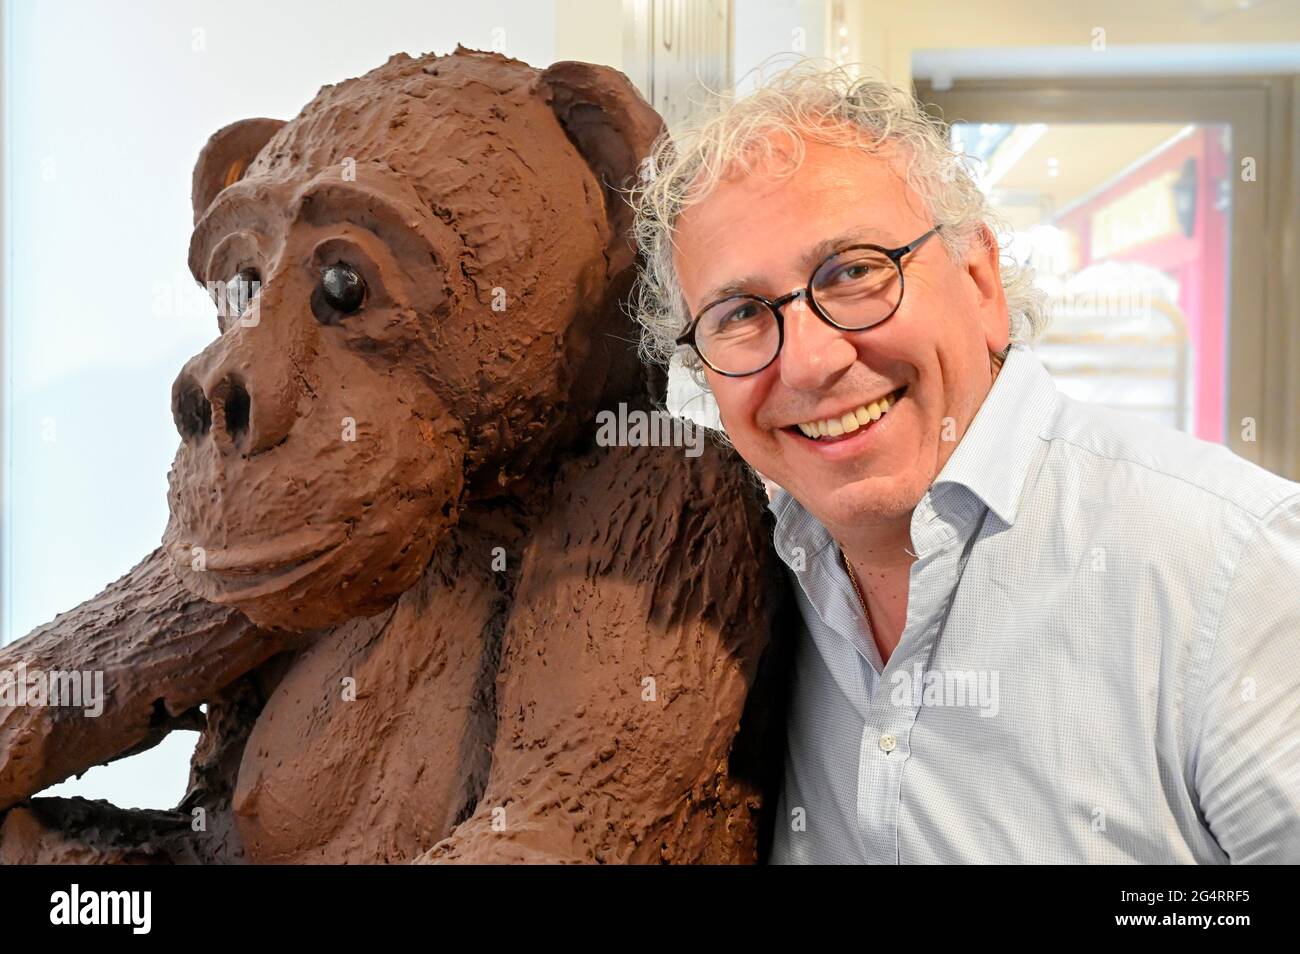 Eric Lamy est le plus célèbre chocolatier de Brive-la-Gaillarde, France Banque D'Images